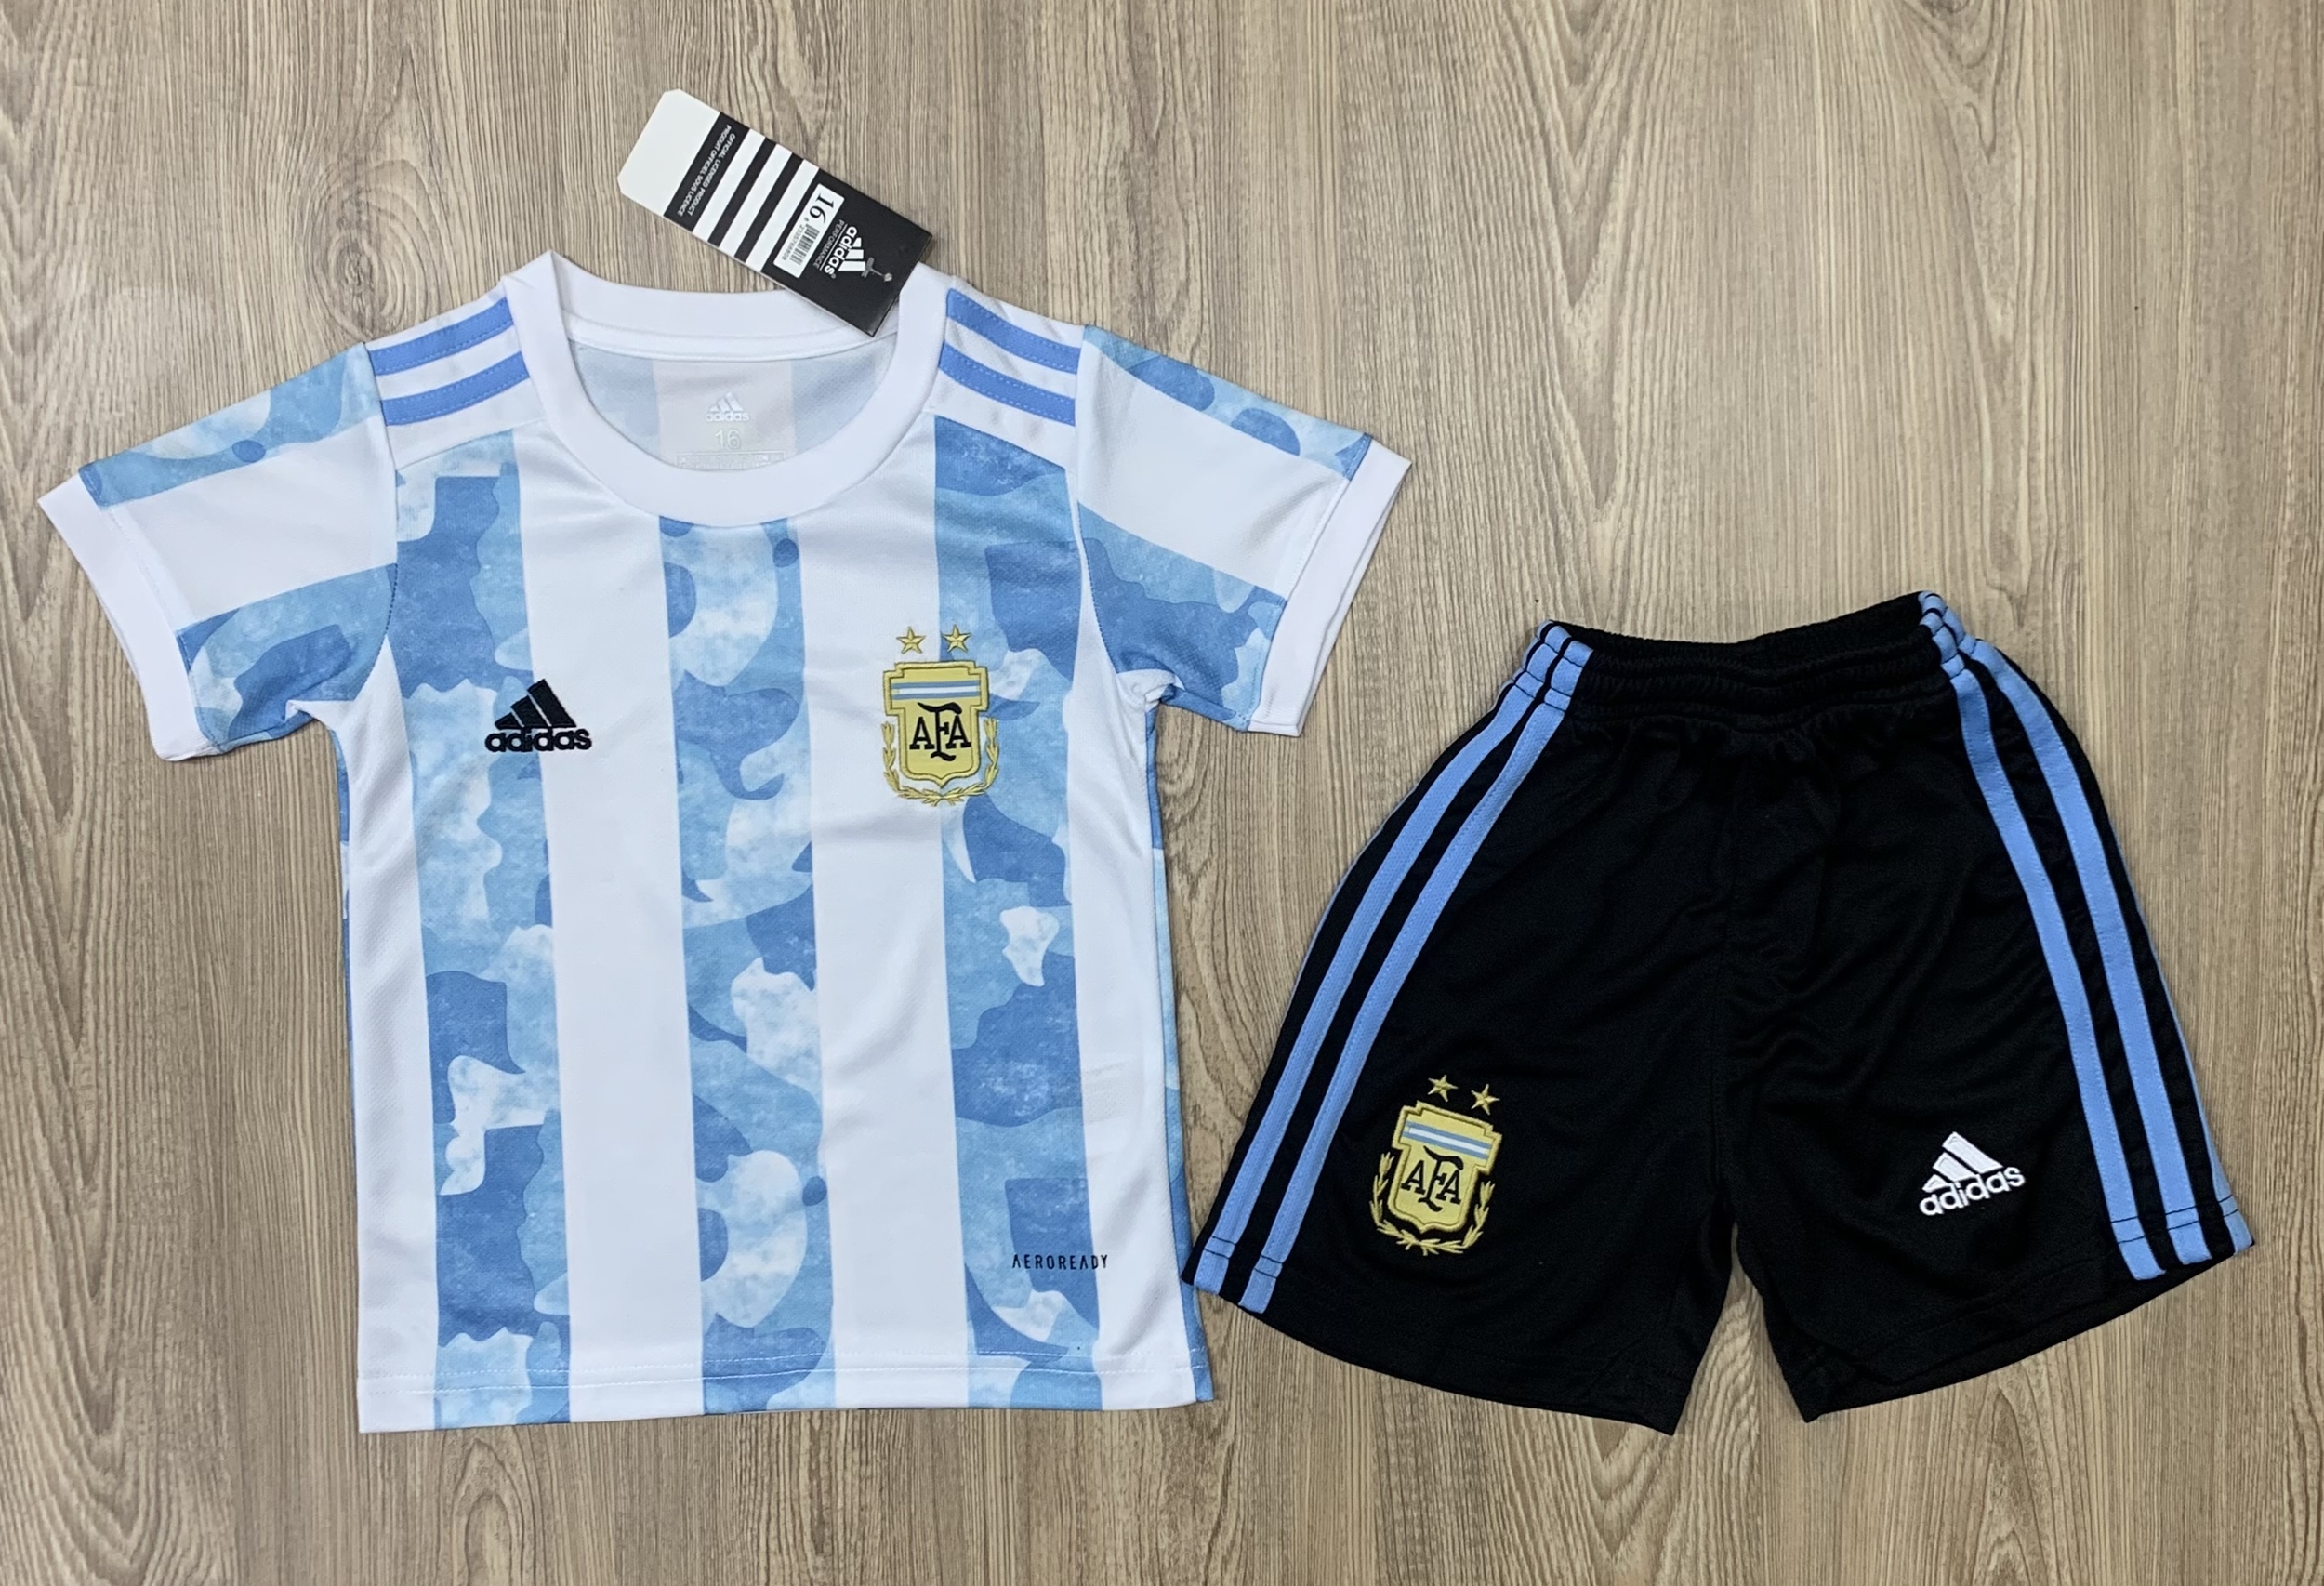 ชุดฟุตบอลเด็ก ชุดบอลเด็ก ชุดกีฬาเด็ก ชุดเด็ก เสื้อทีม Argentine ซื้อครั้งเดียวได้ทั้งชุด (เสื้อ+กางเกง) ตัวเดียวในราคาส่ง สินค้าเกรด AAA